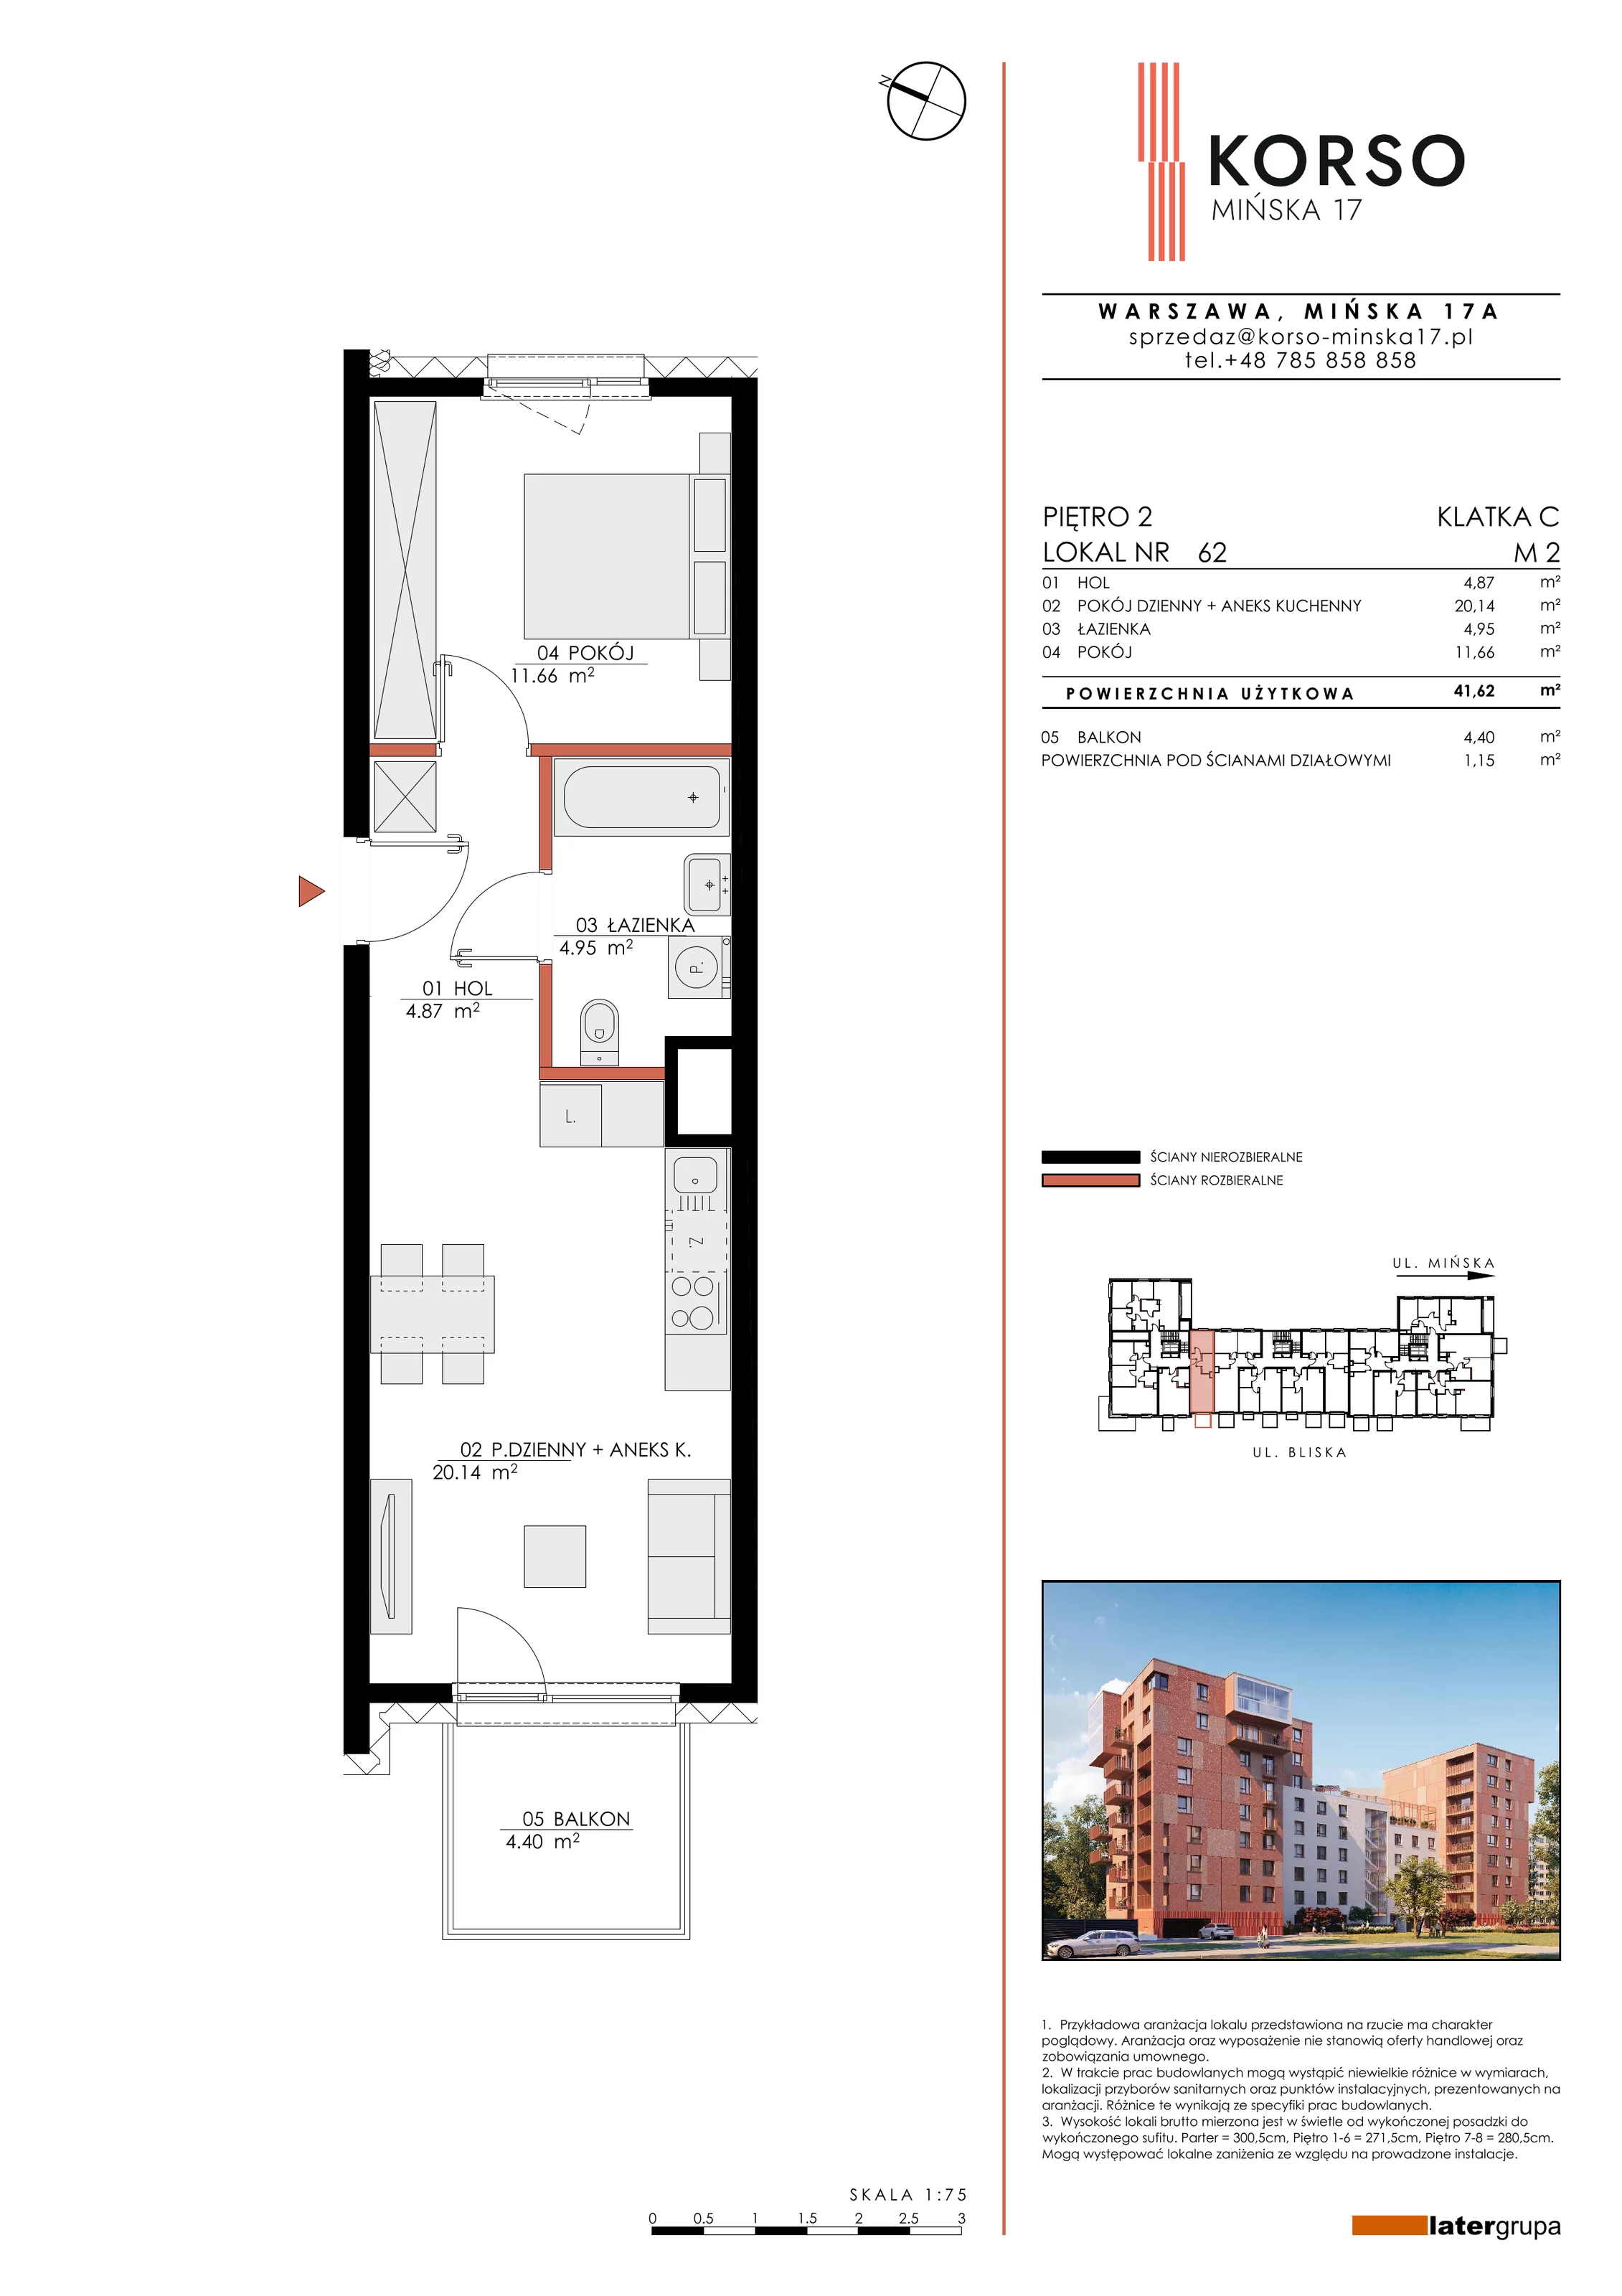 Mieszkanie 41,62 m², piętro 2, oferta nr 62, KORSO Mińska 17, Warszawa, Praga Południe, Kamionek, ul. Mińska 17